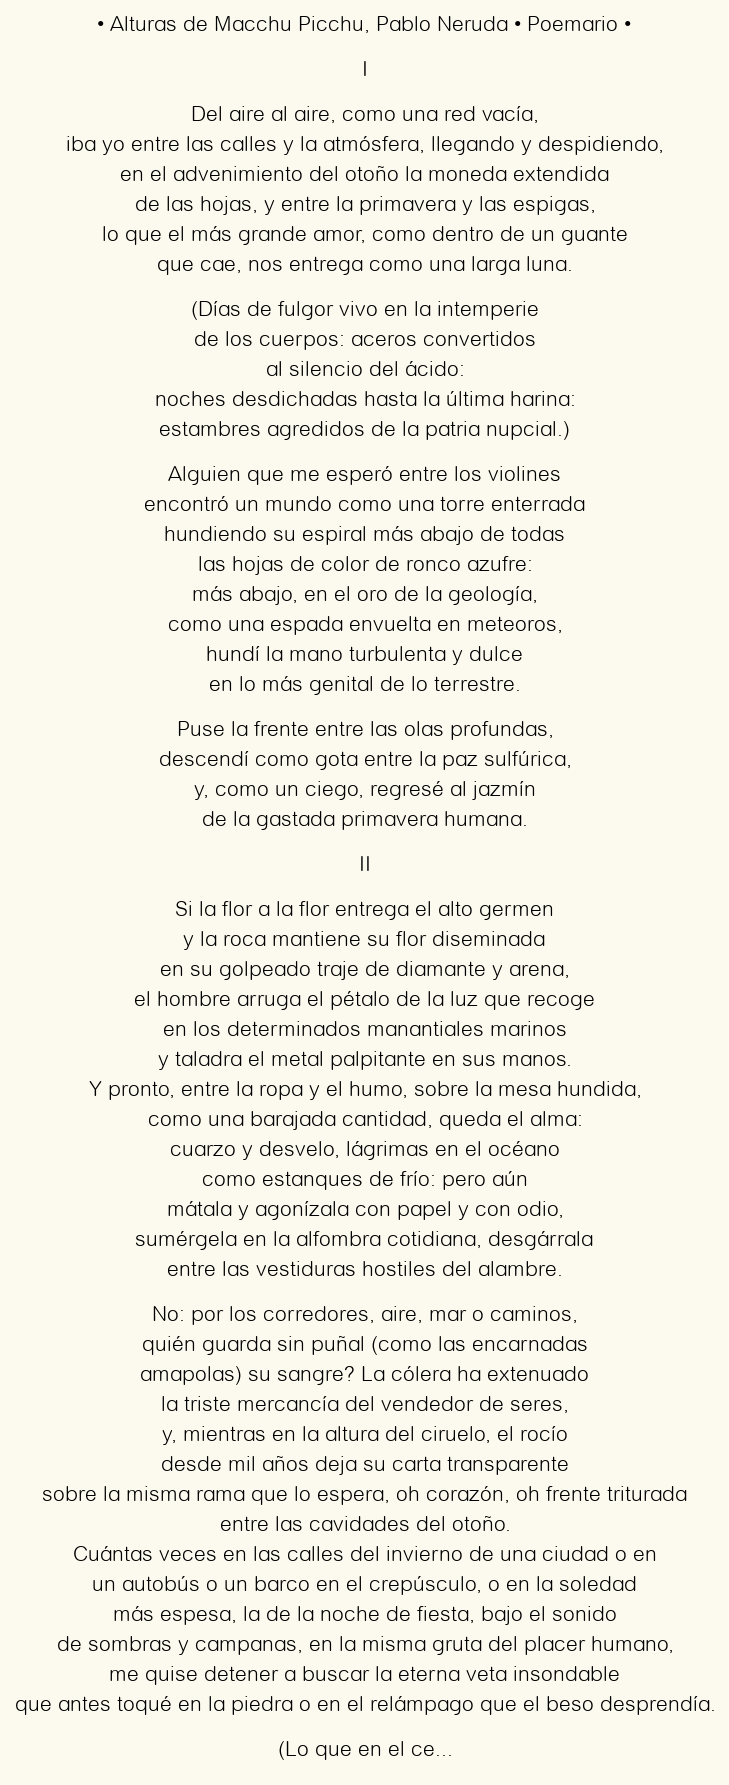 Imagen con el poema Alturas de Macchu Picchu, por Pablo Neruda